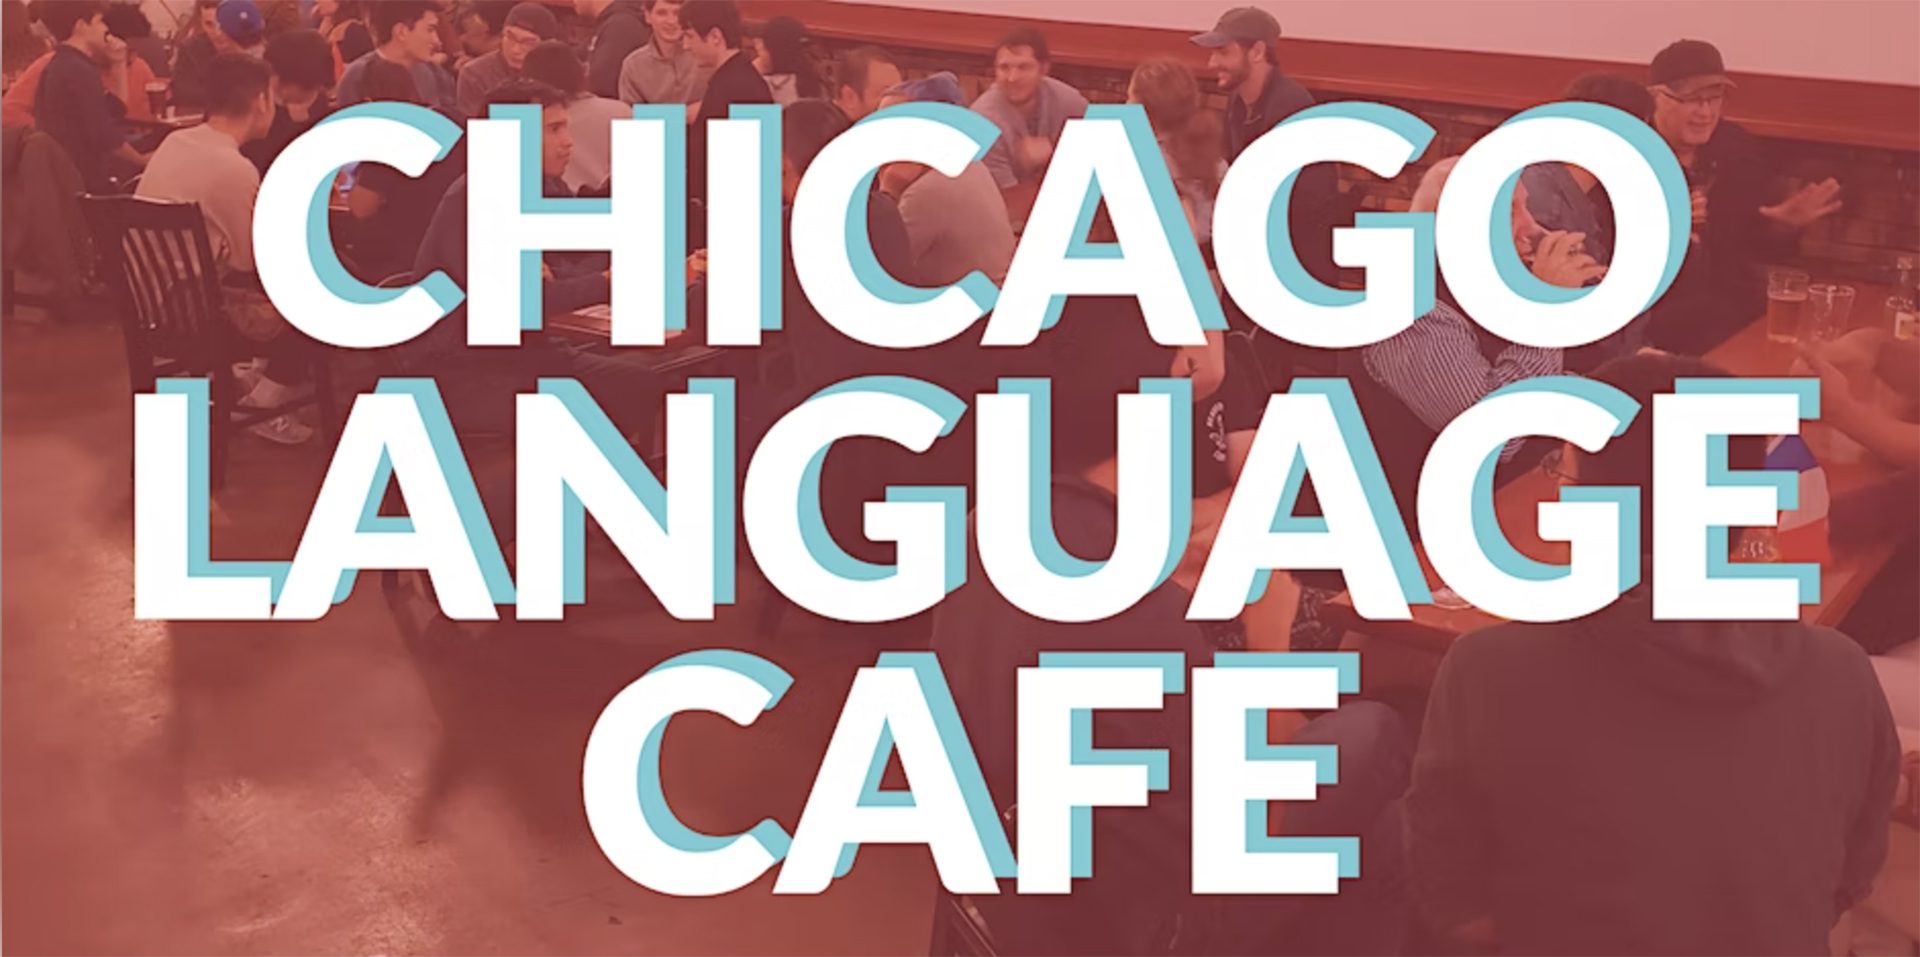 &quot;Chicago Language Cafe&quot; escrito sobre una imagen roja de gente sentada y hablando alrededor de mesas.